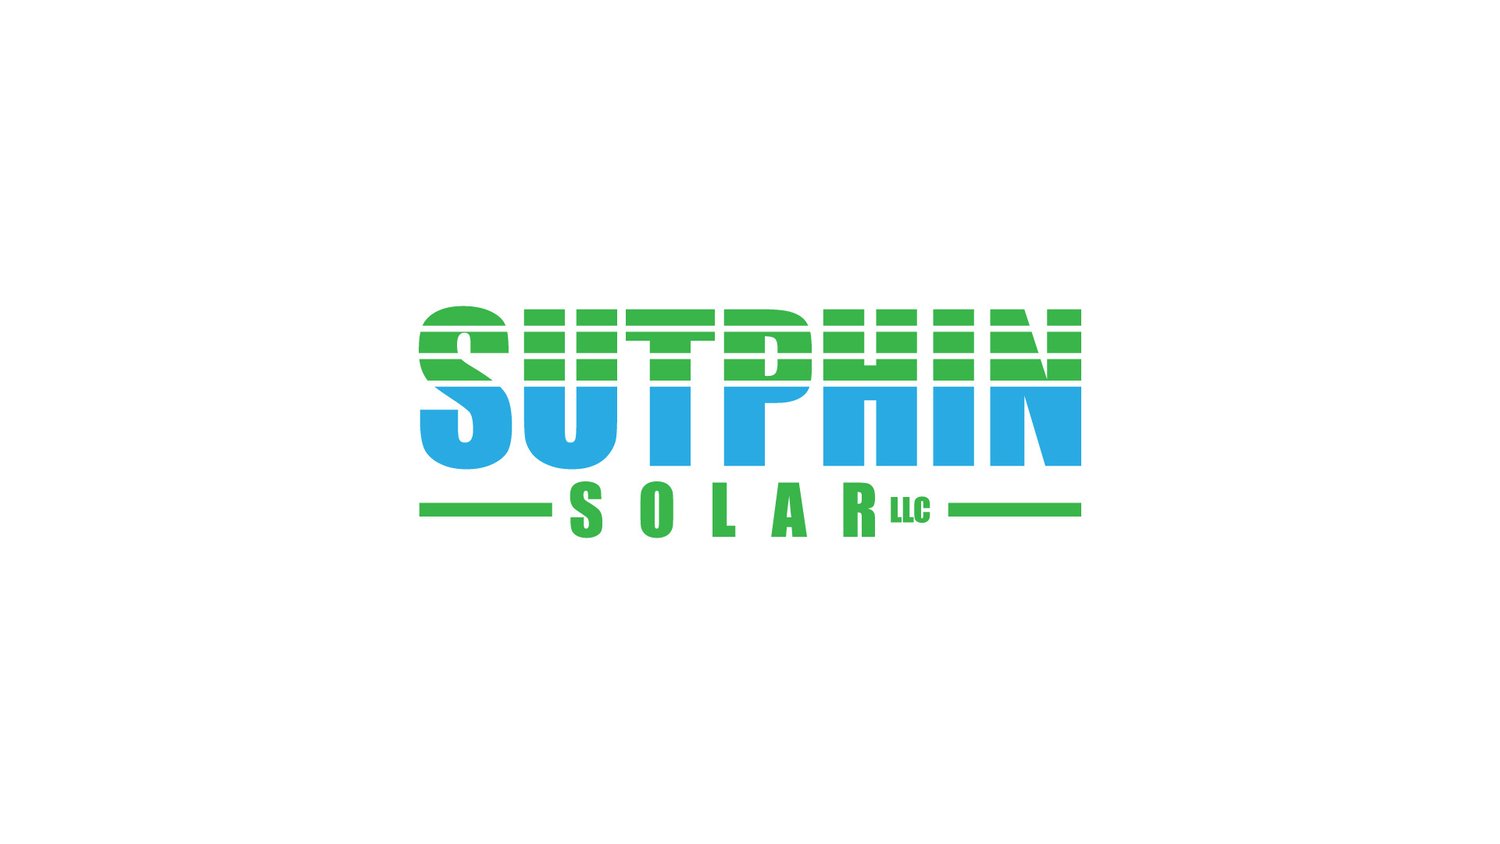 Sutphin Solar